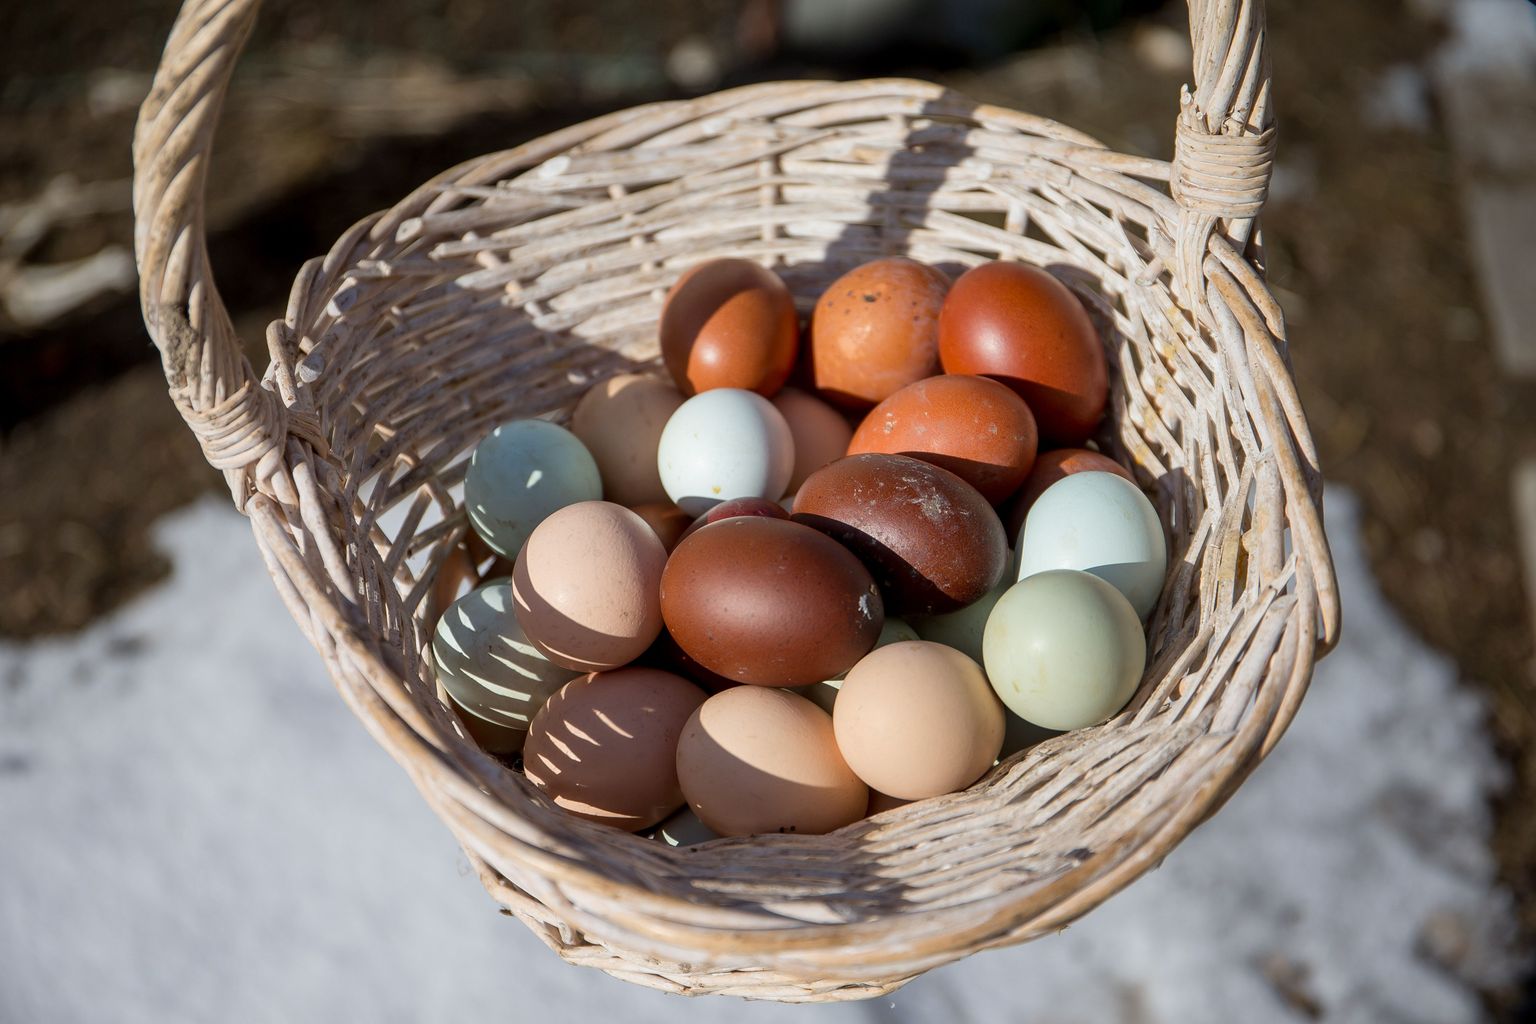 Tumepruune mune munevad Prantsuse päritolu maransi tõugu kanad, beeže Sussexi tõugu kanad ning sinaka koorega mune algselt Tšiilis aretatud araucanad.